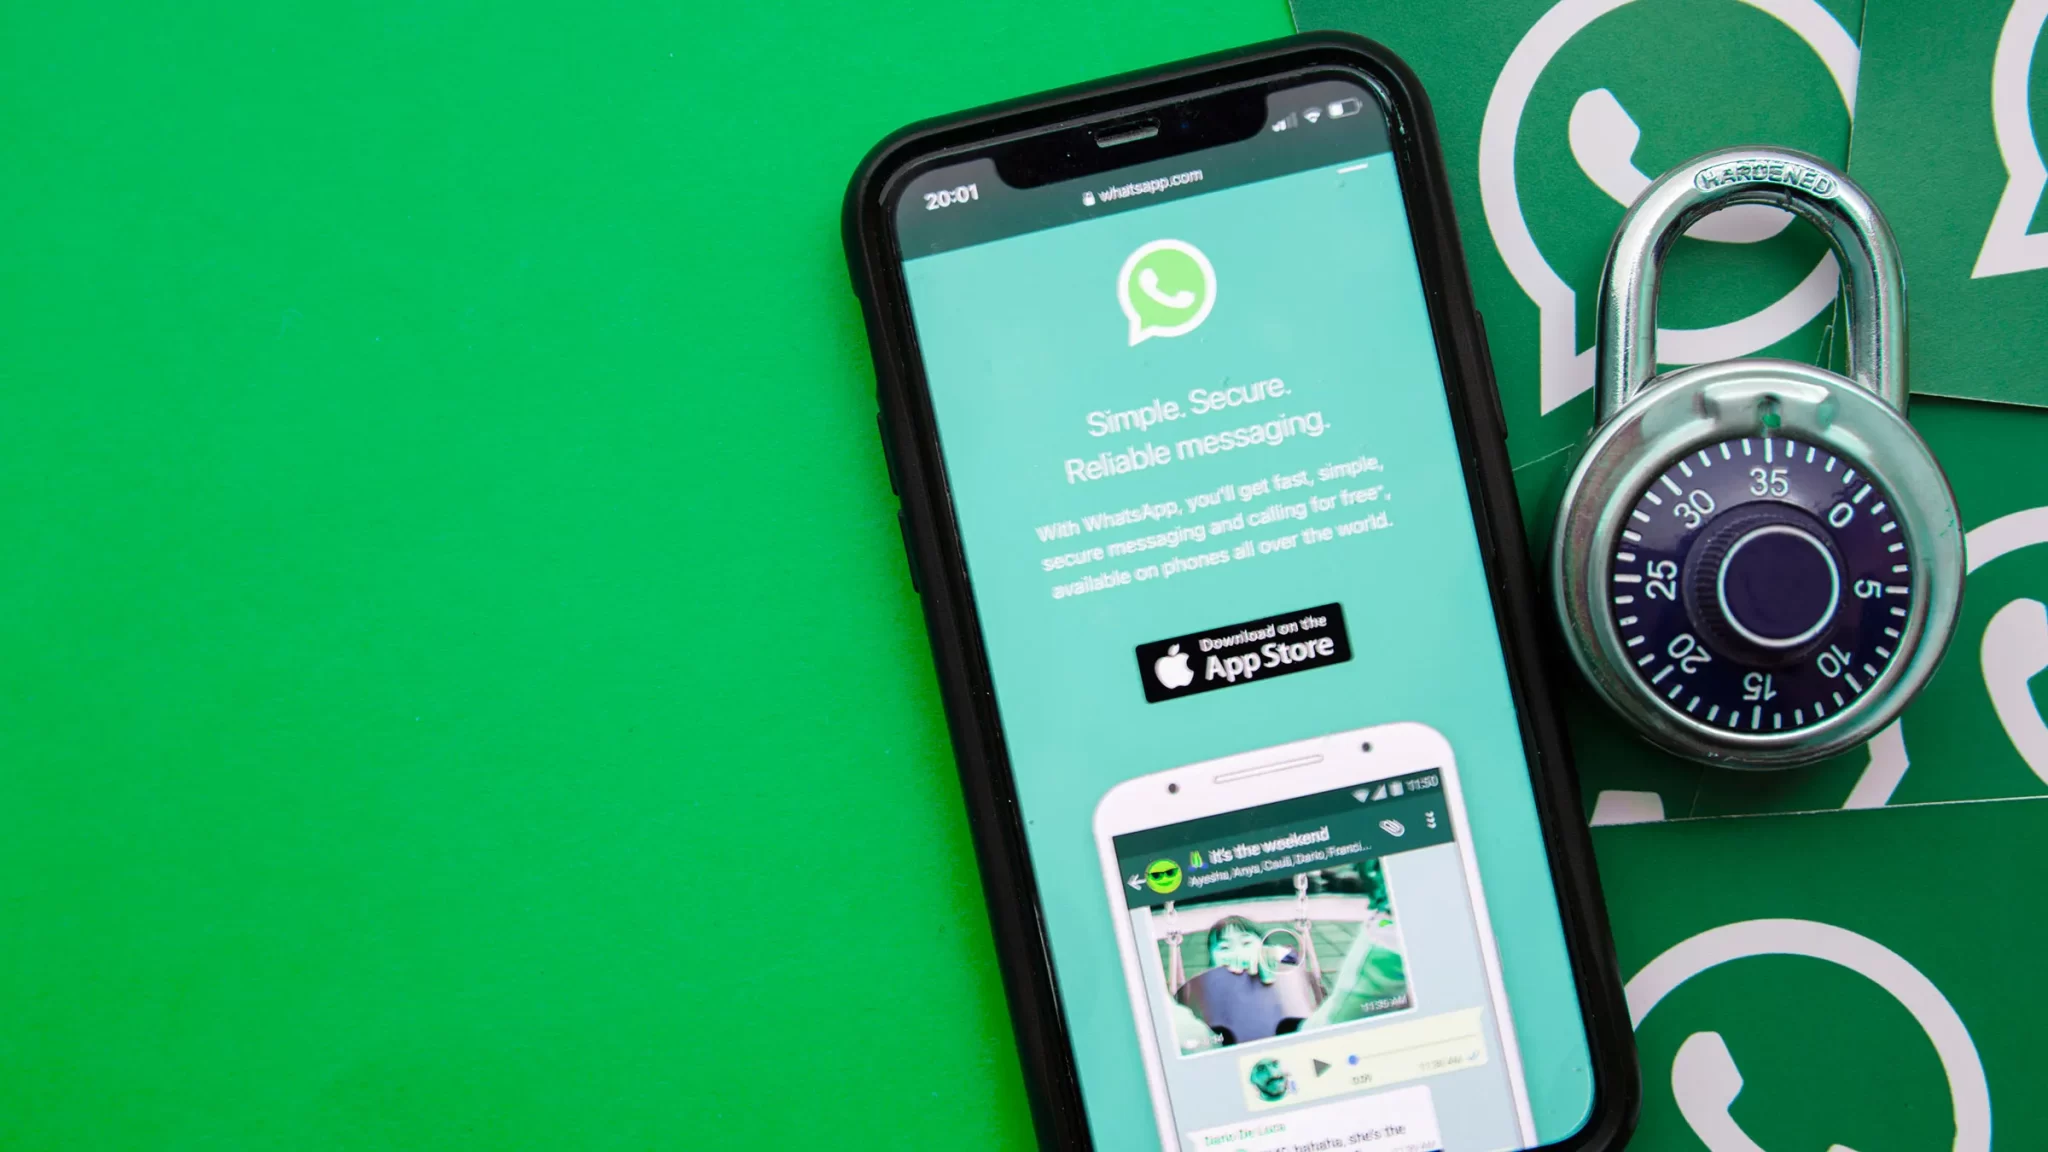 Ahora será imposible que puedan robar tu cuenta de WhatsApp gracias al doble código de verificación